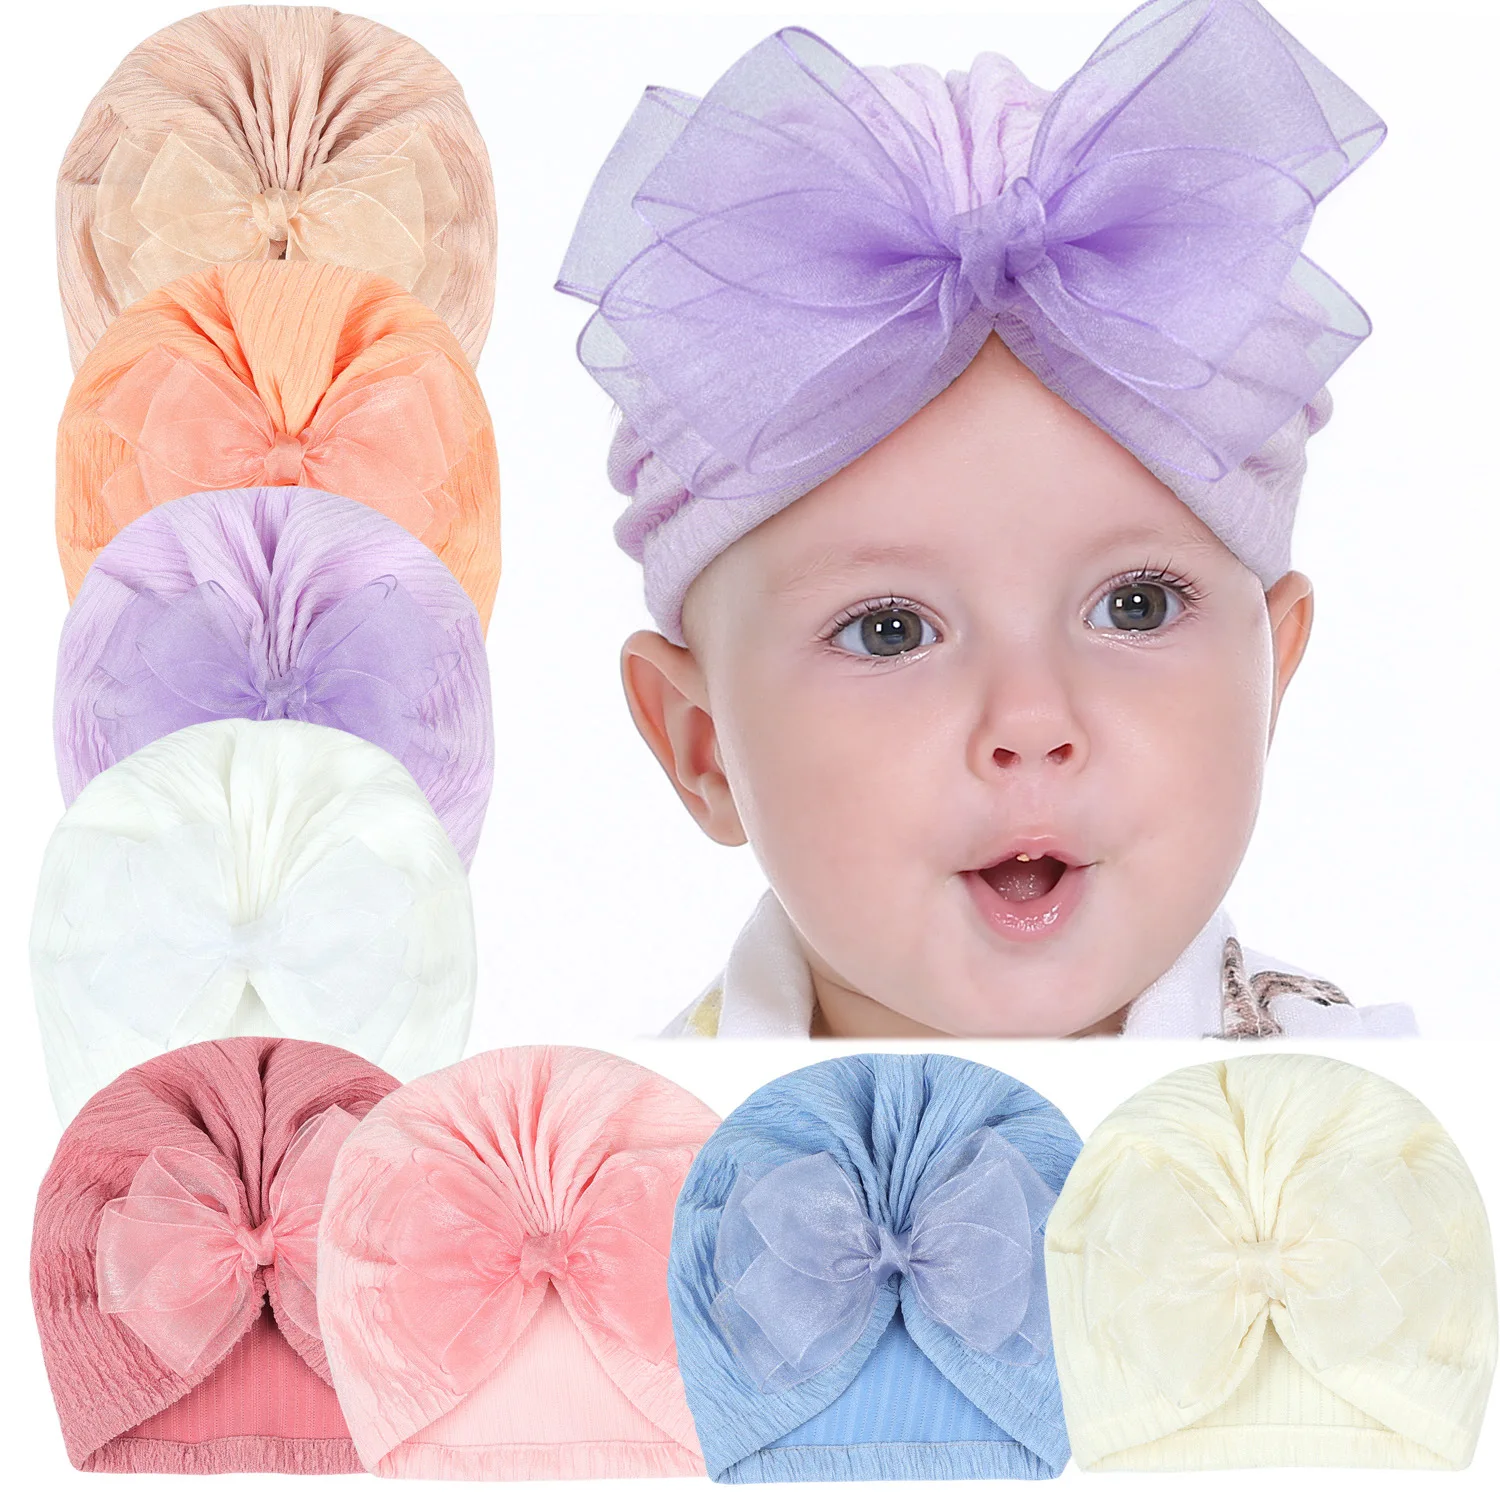 Turbante acanalado de algodón para bebé, gorros con lazo de encaje, turbante indio, gorro de punto para niño y niña